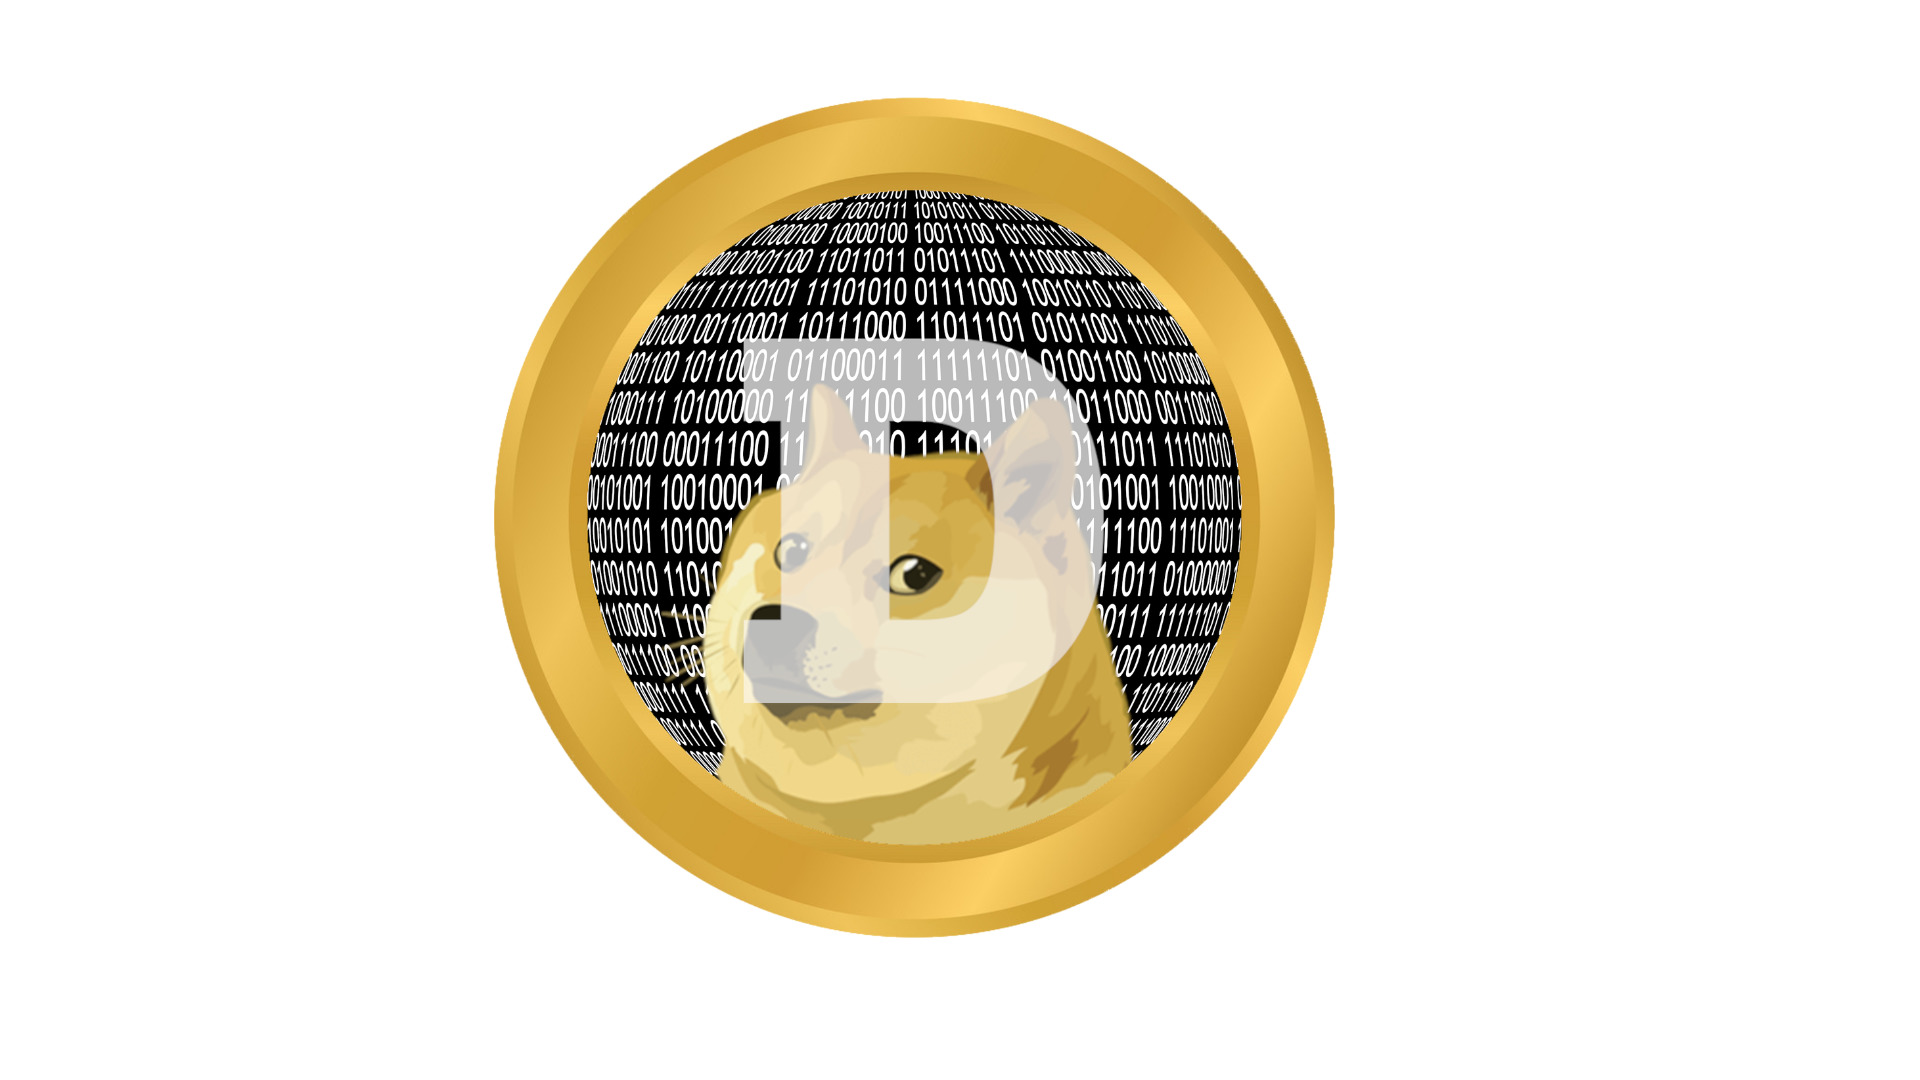 นักพัฒนาเหรียญมีม Dogecoin เปิดตัว NFT รายการแรกบนบล็อกเชน Dogecoin